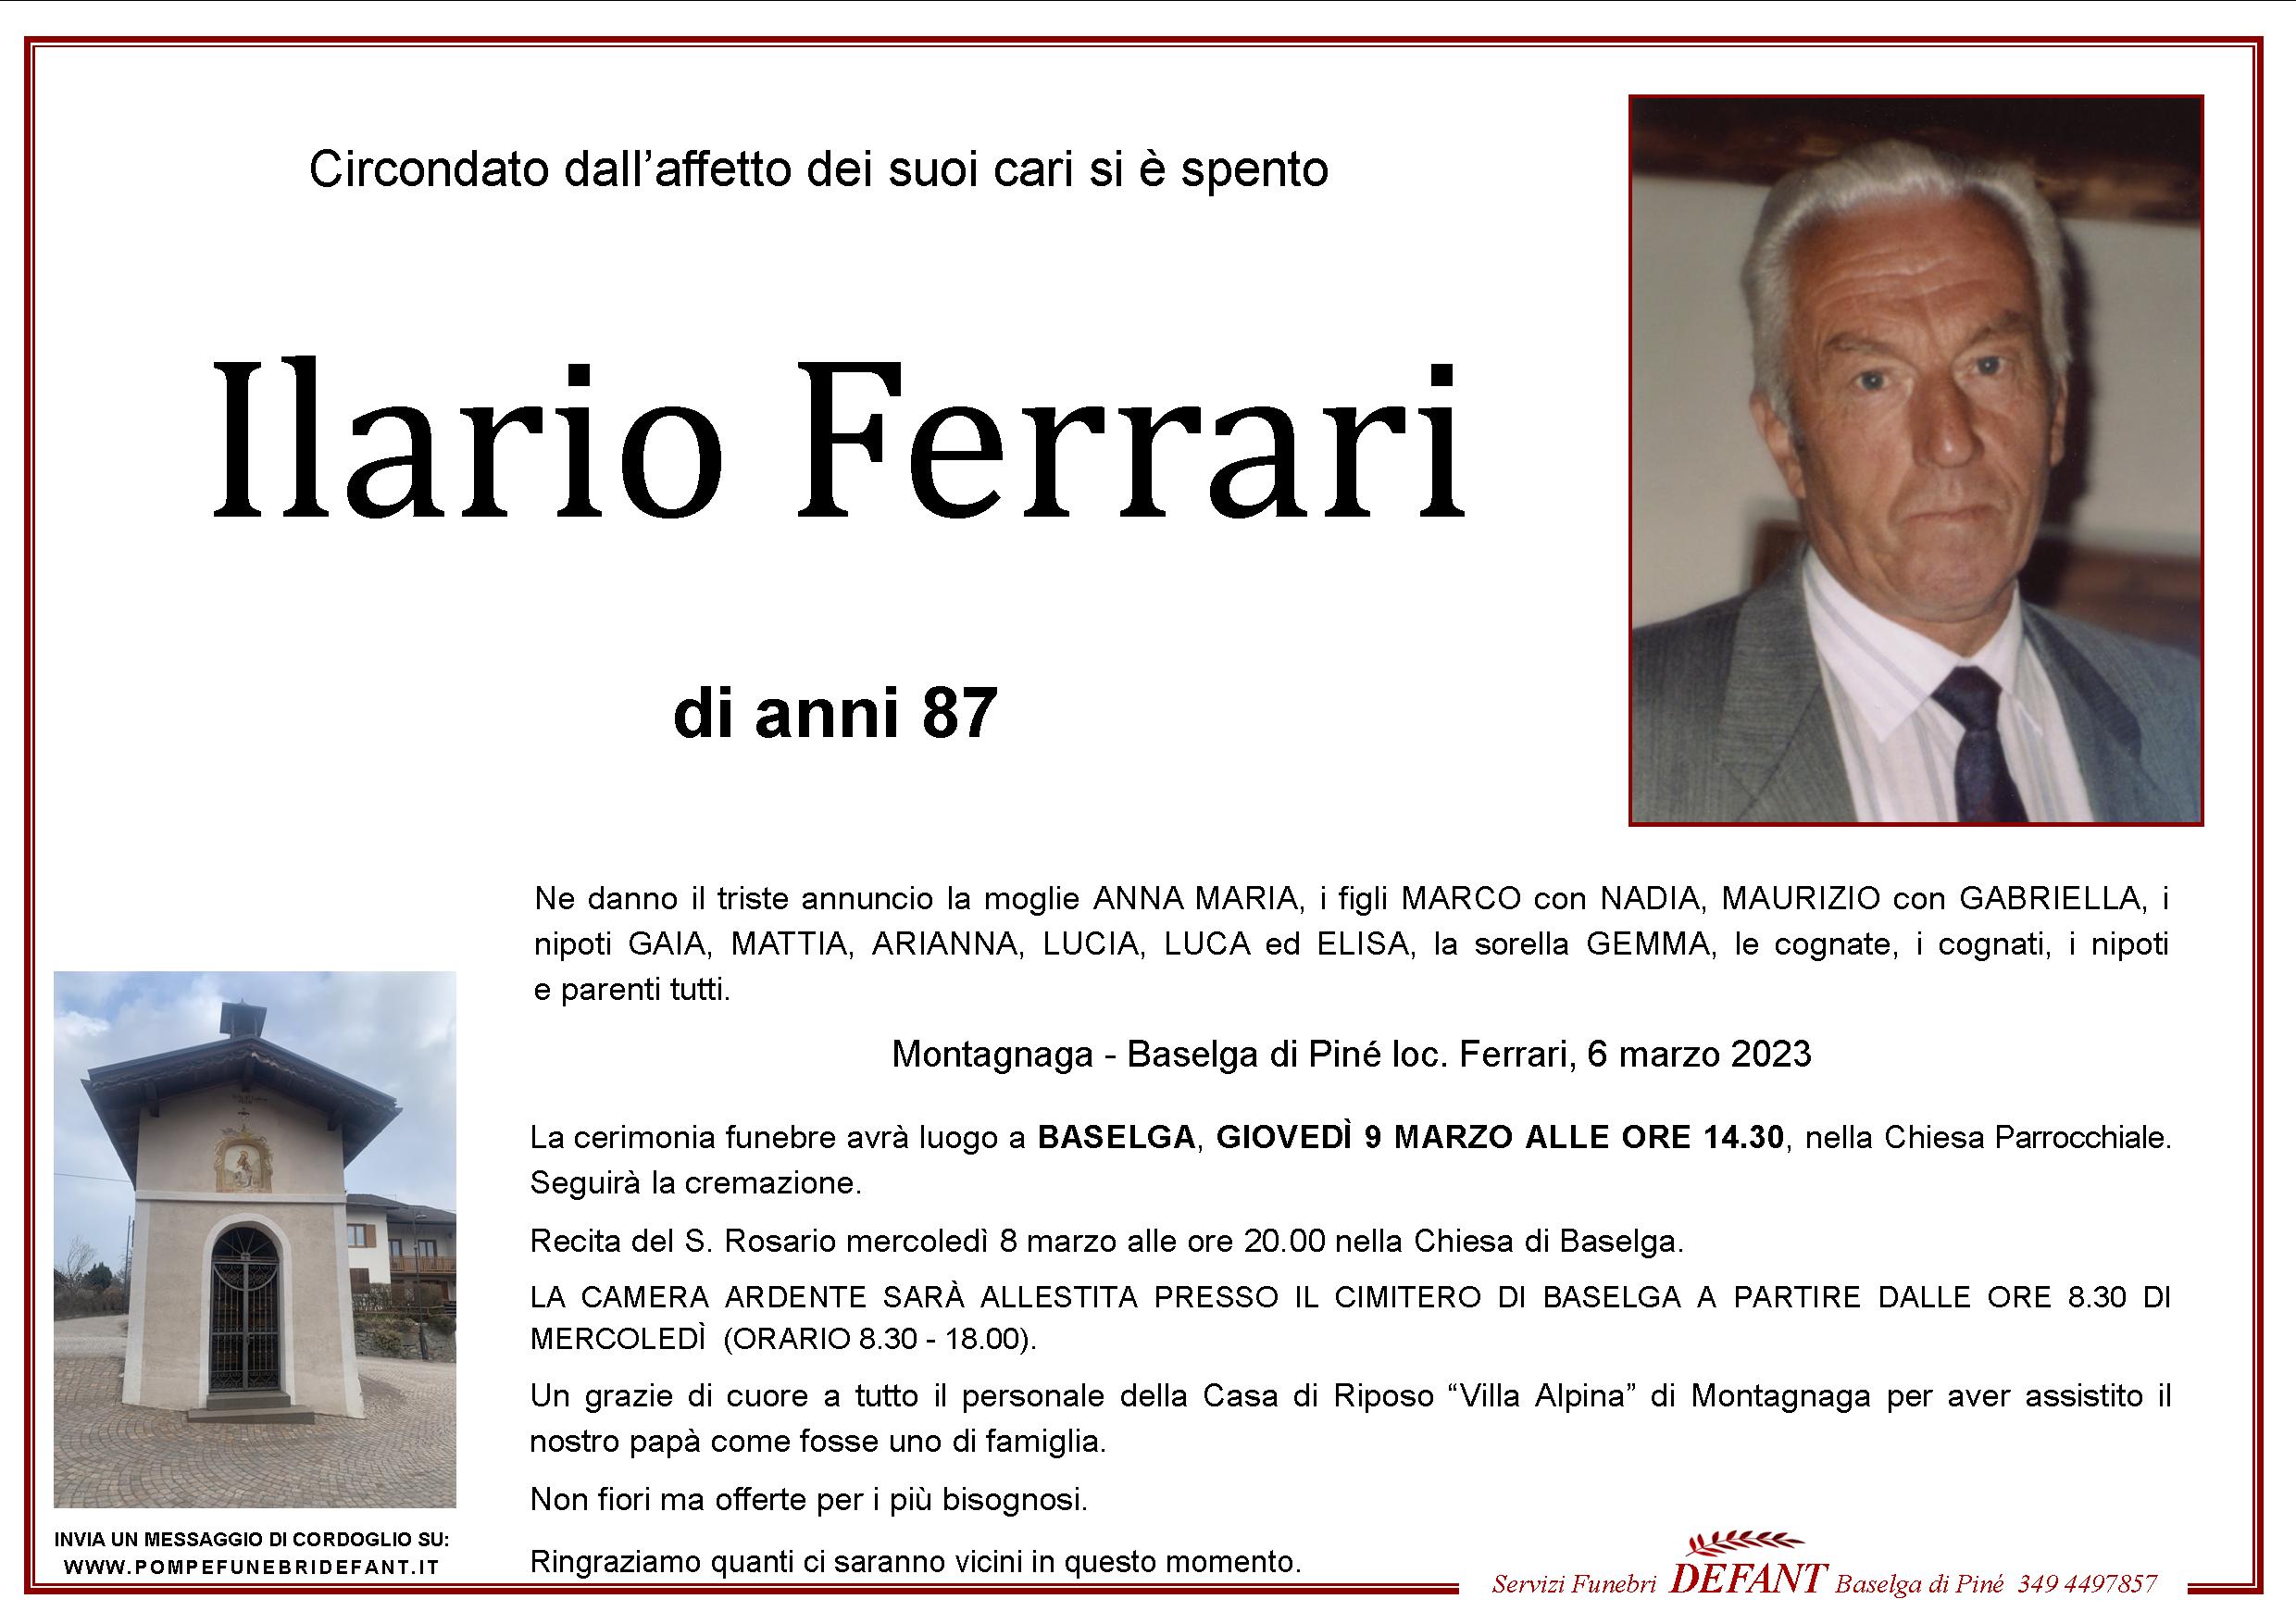 Ilario Ferrari